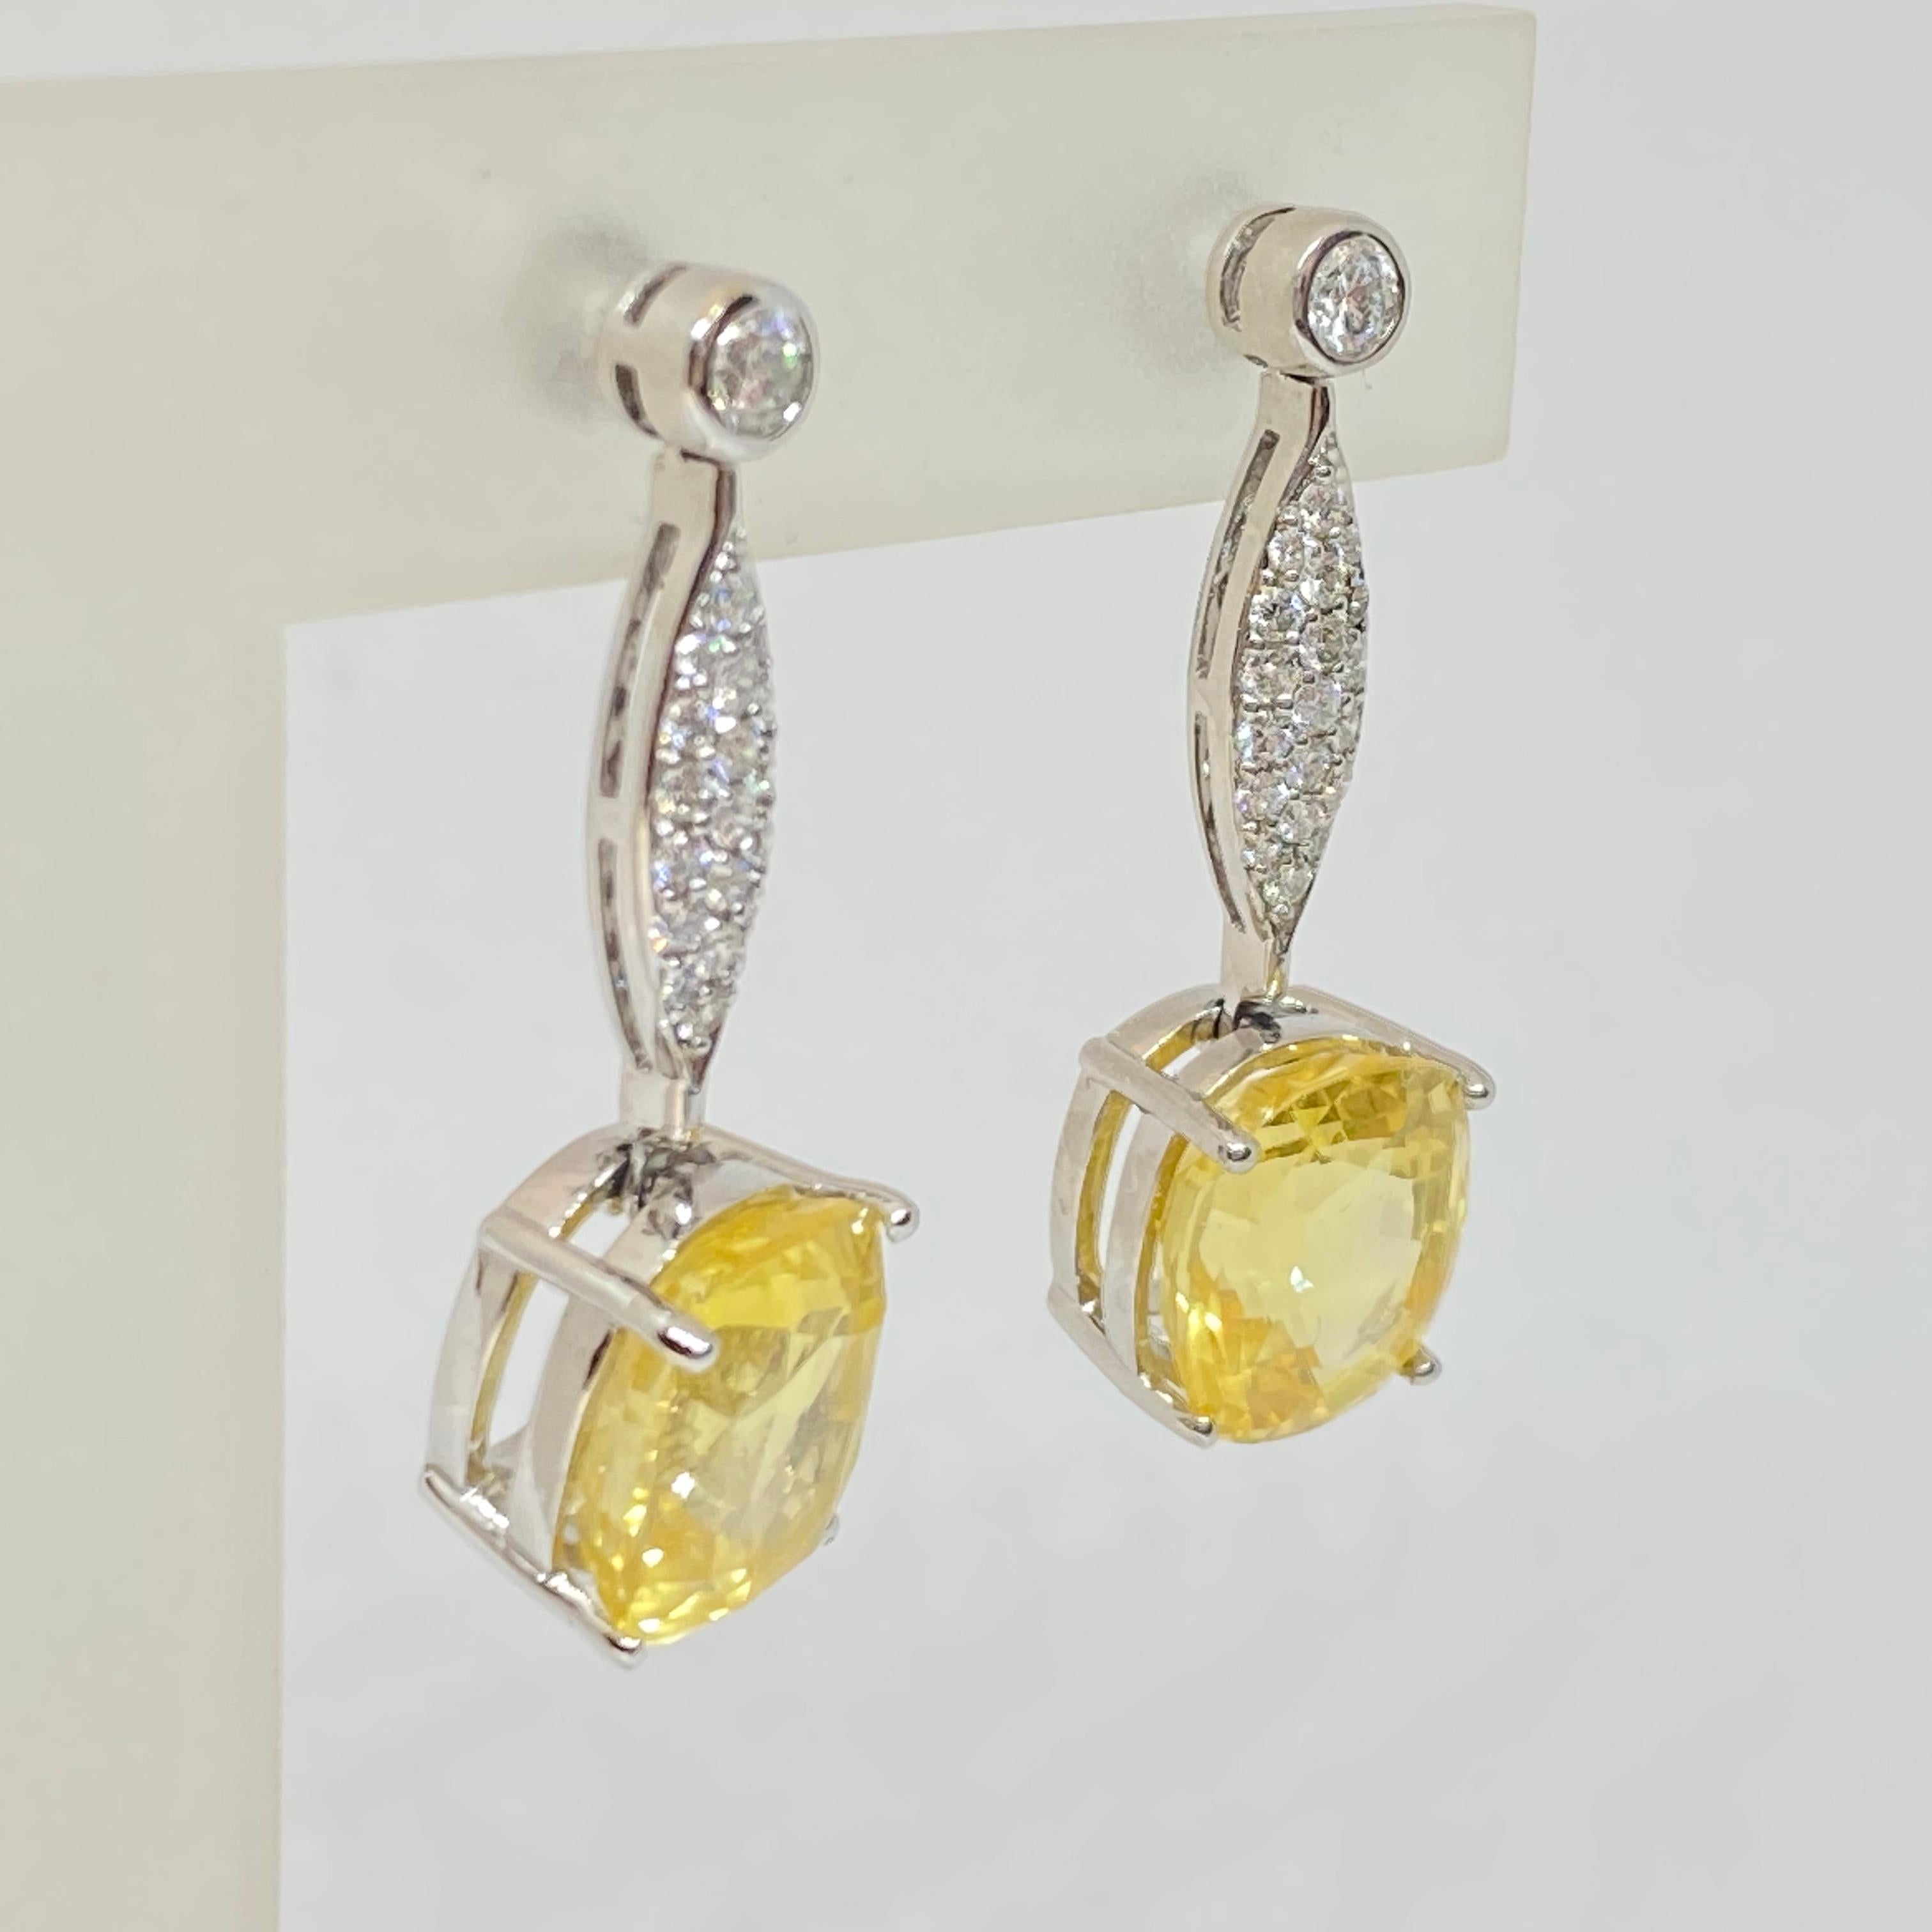 Oval Cut No Heat Yellow Sapphire Oval Diamond Earrings 18K